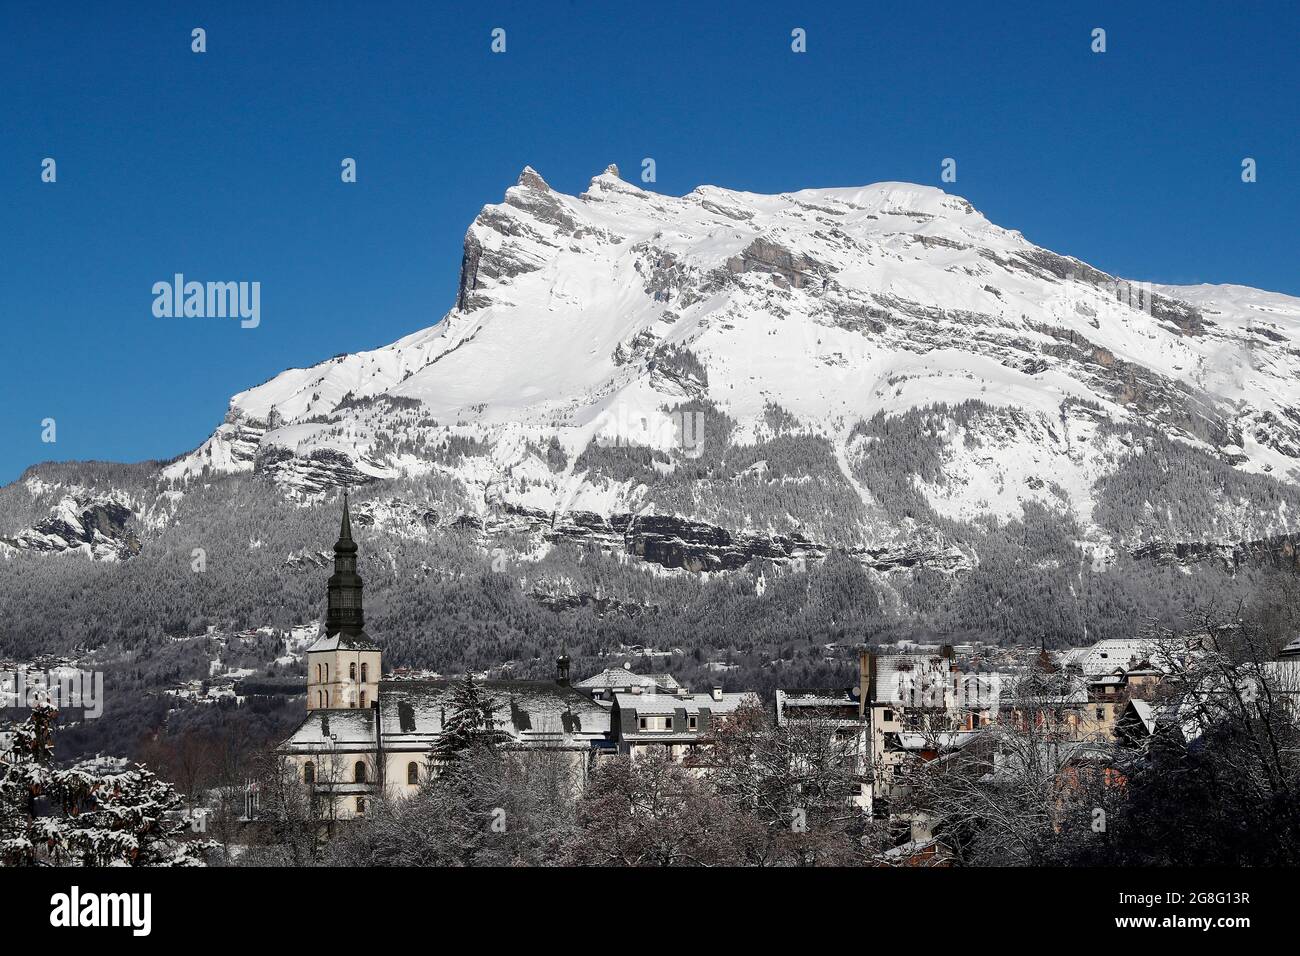 Saint Gervais Mont-Blanc villaggio in inverno, una famosa stazione sciistica, Saint-Gervais, alta Savoia, Alpi francesi, Francia, Europa Foto Stock